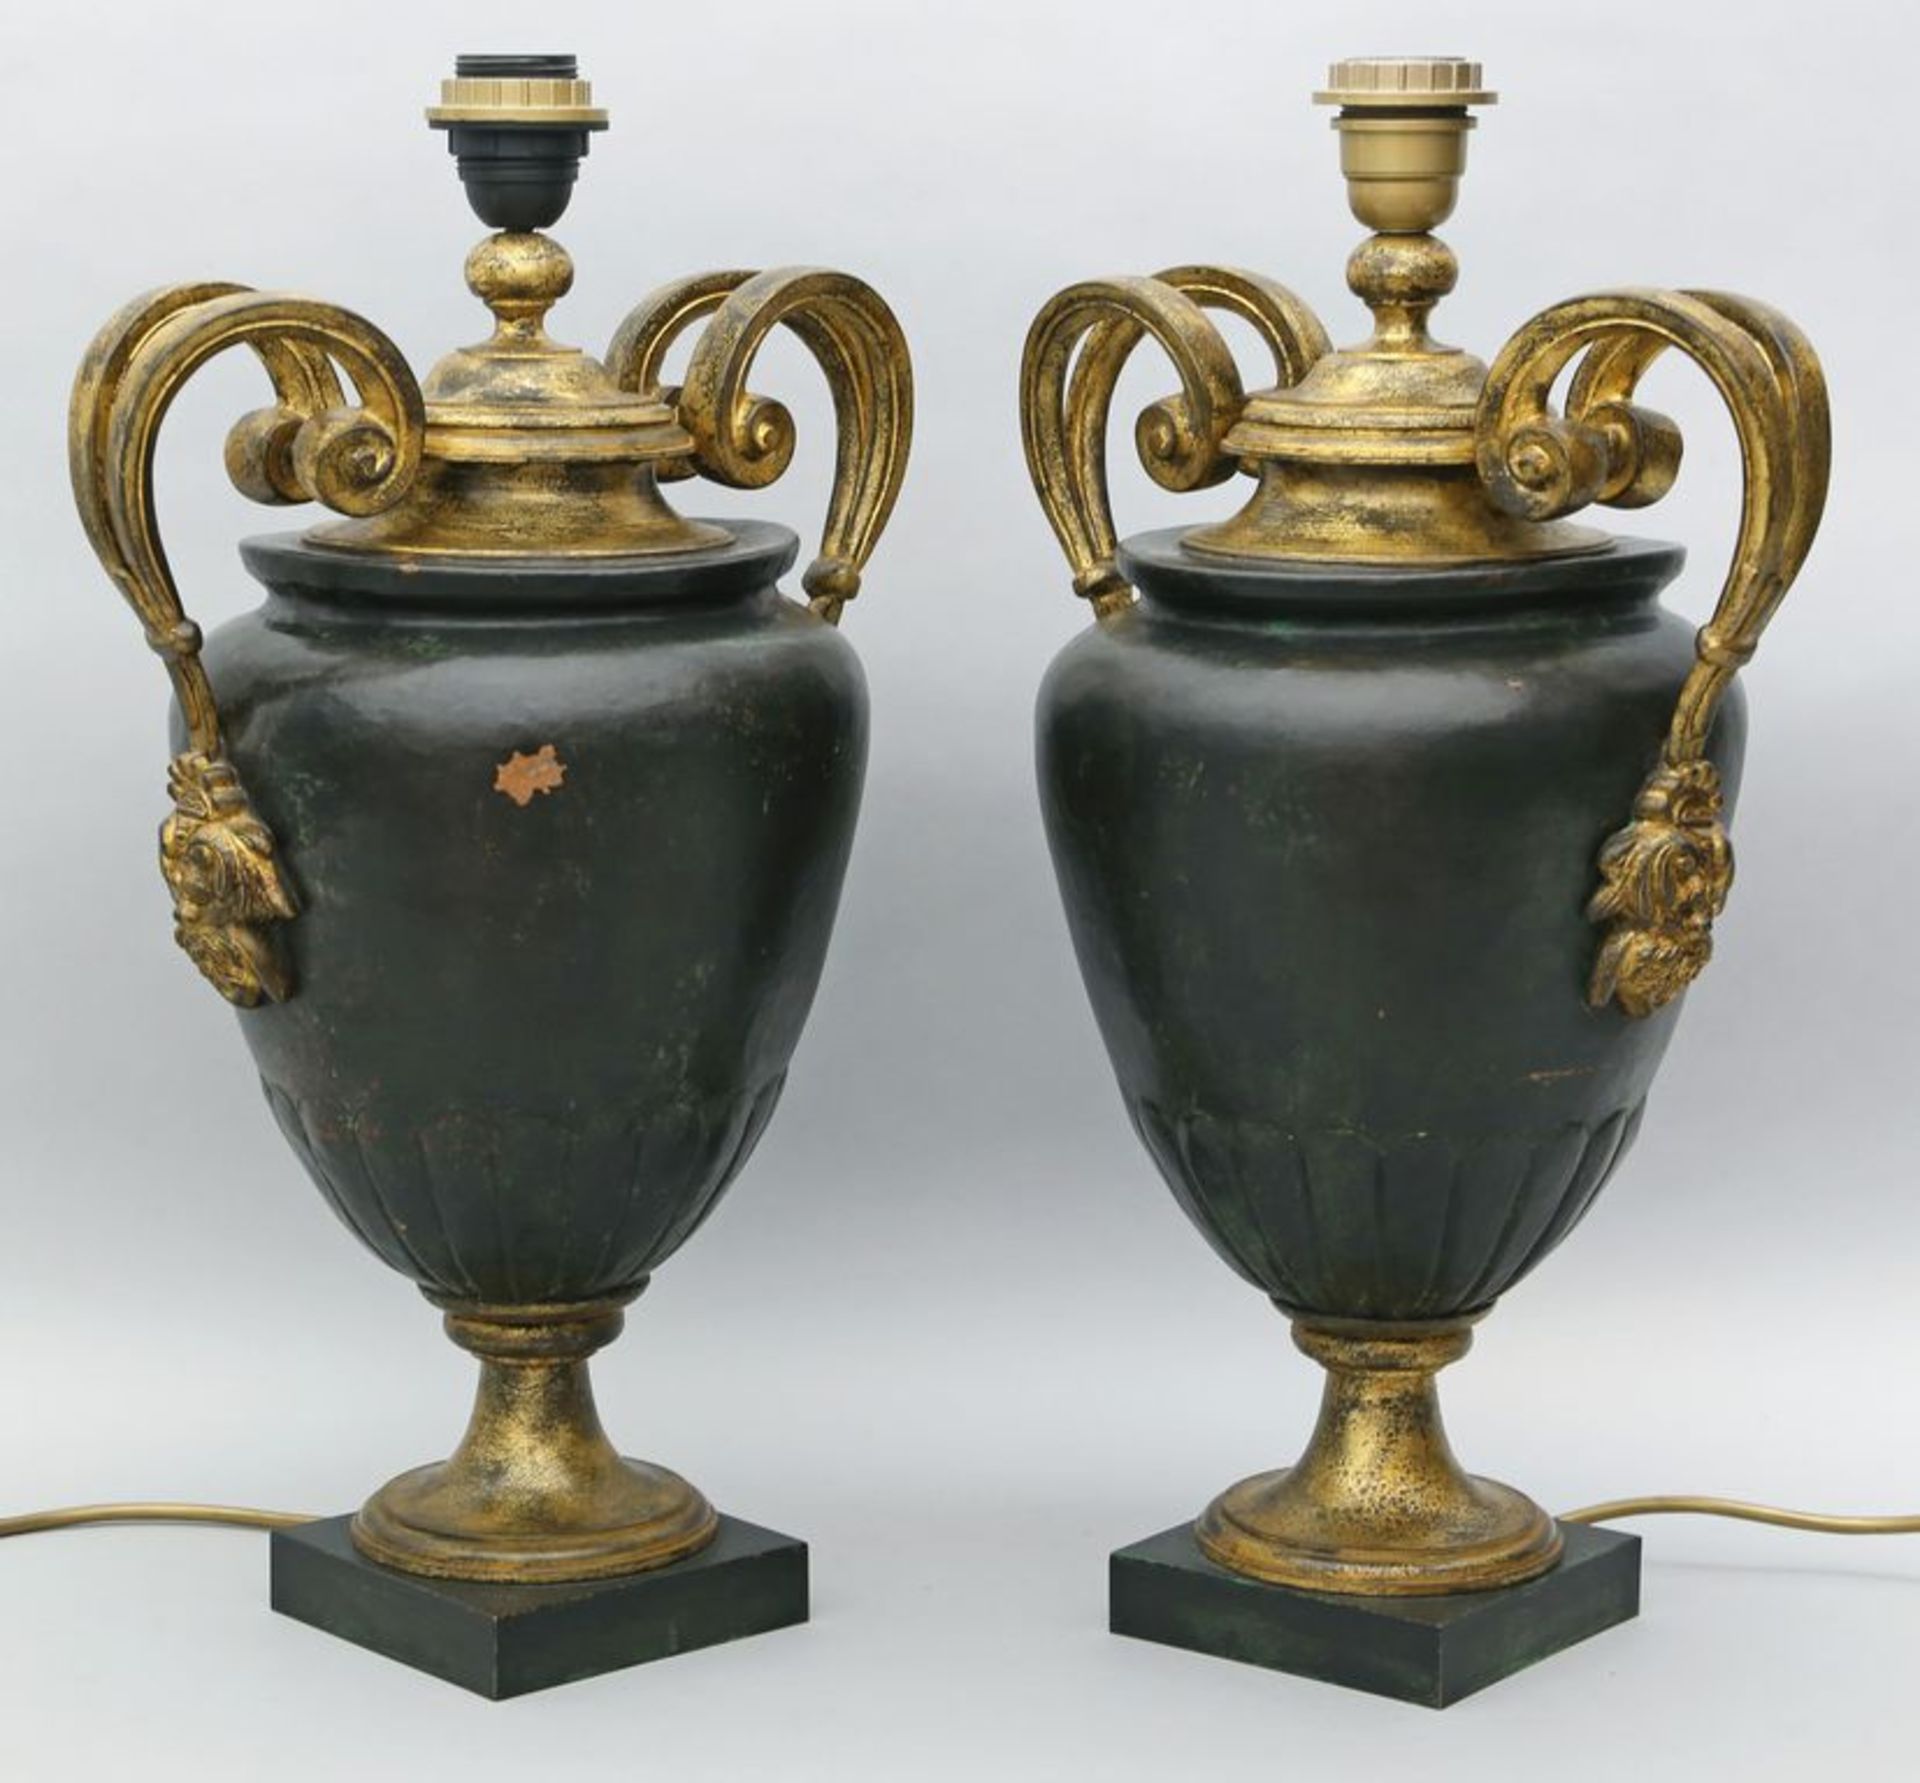 Paar Tischleuchten, je einflammig. Dunkelgrün gefasster Metallkorpus in Form einer Amphora mit vergo - Bild 2 aus 2